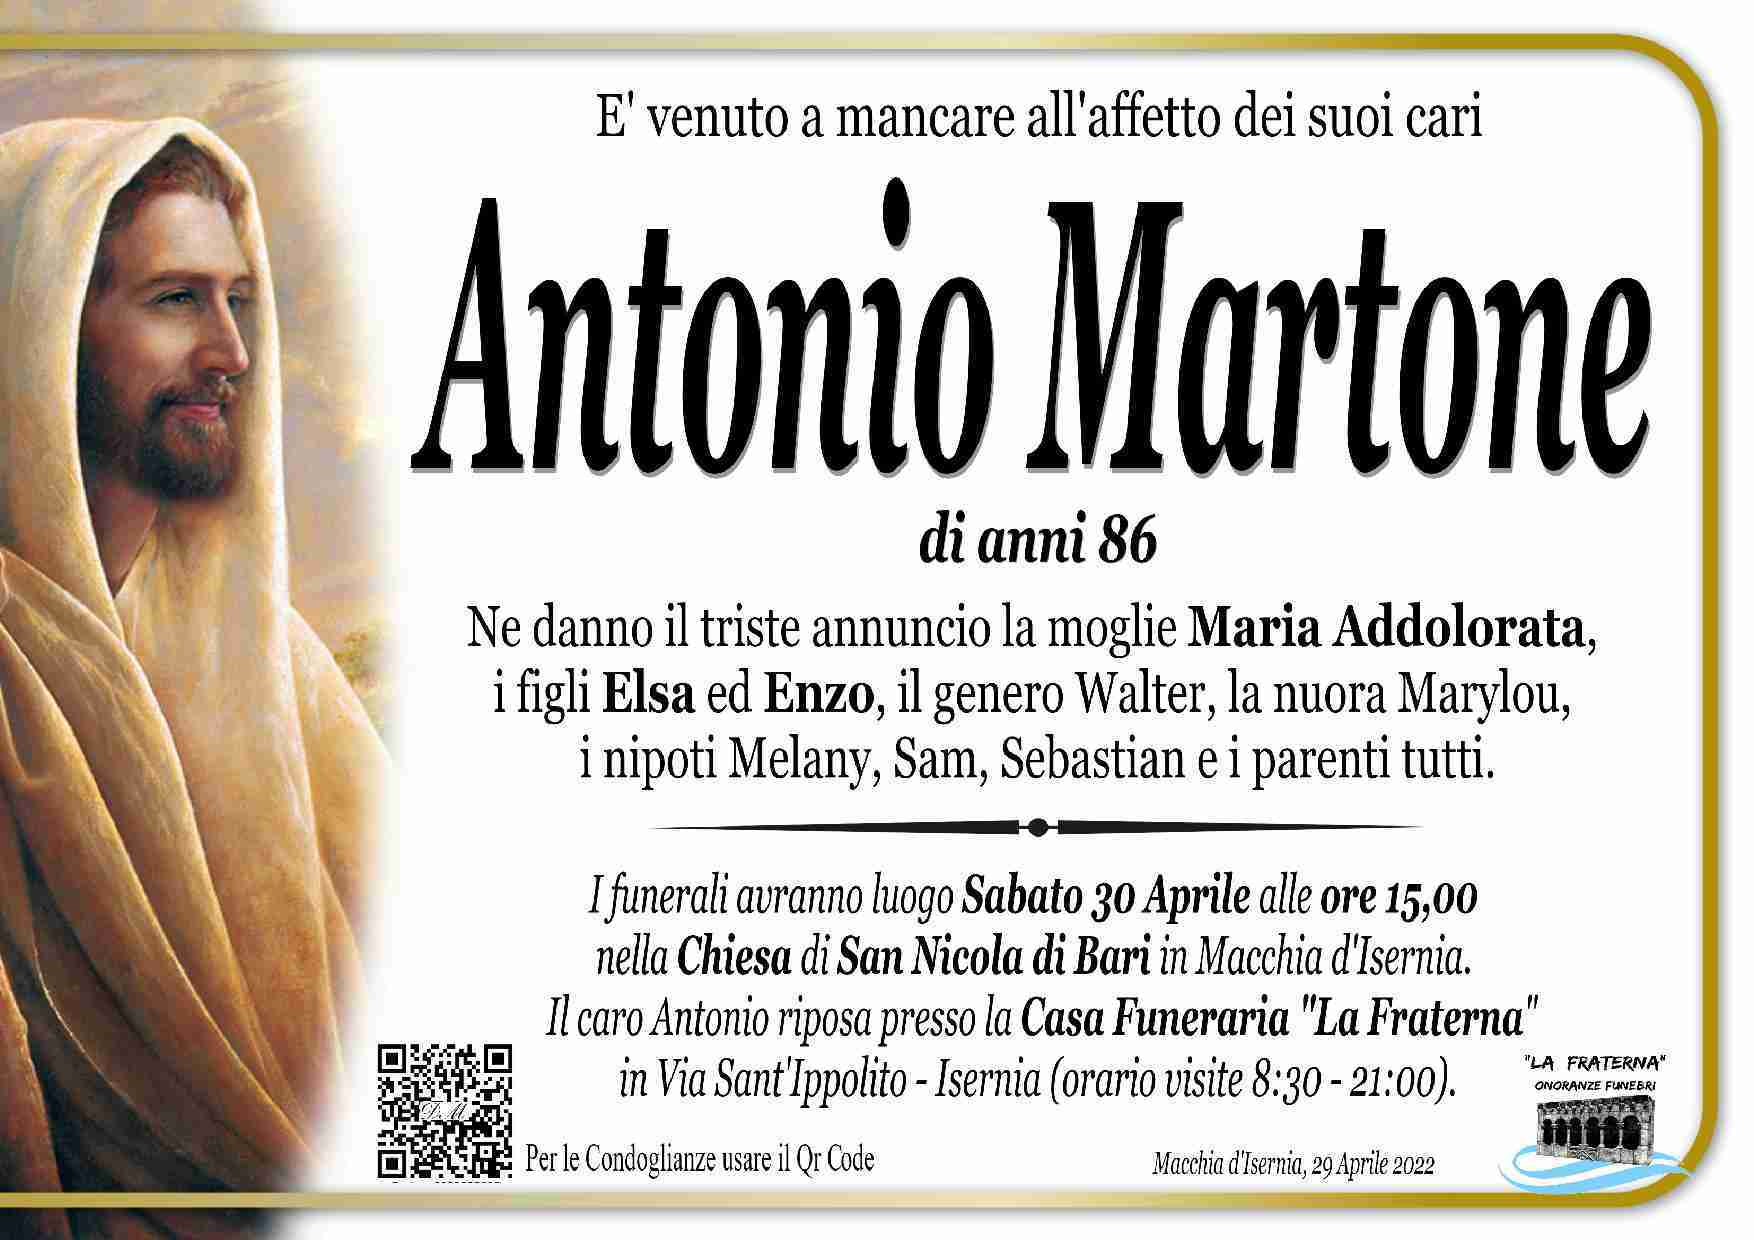 Antonio Martone